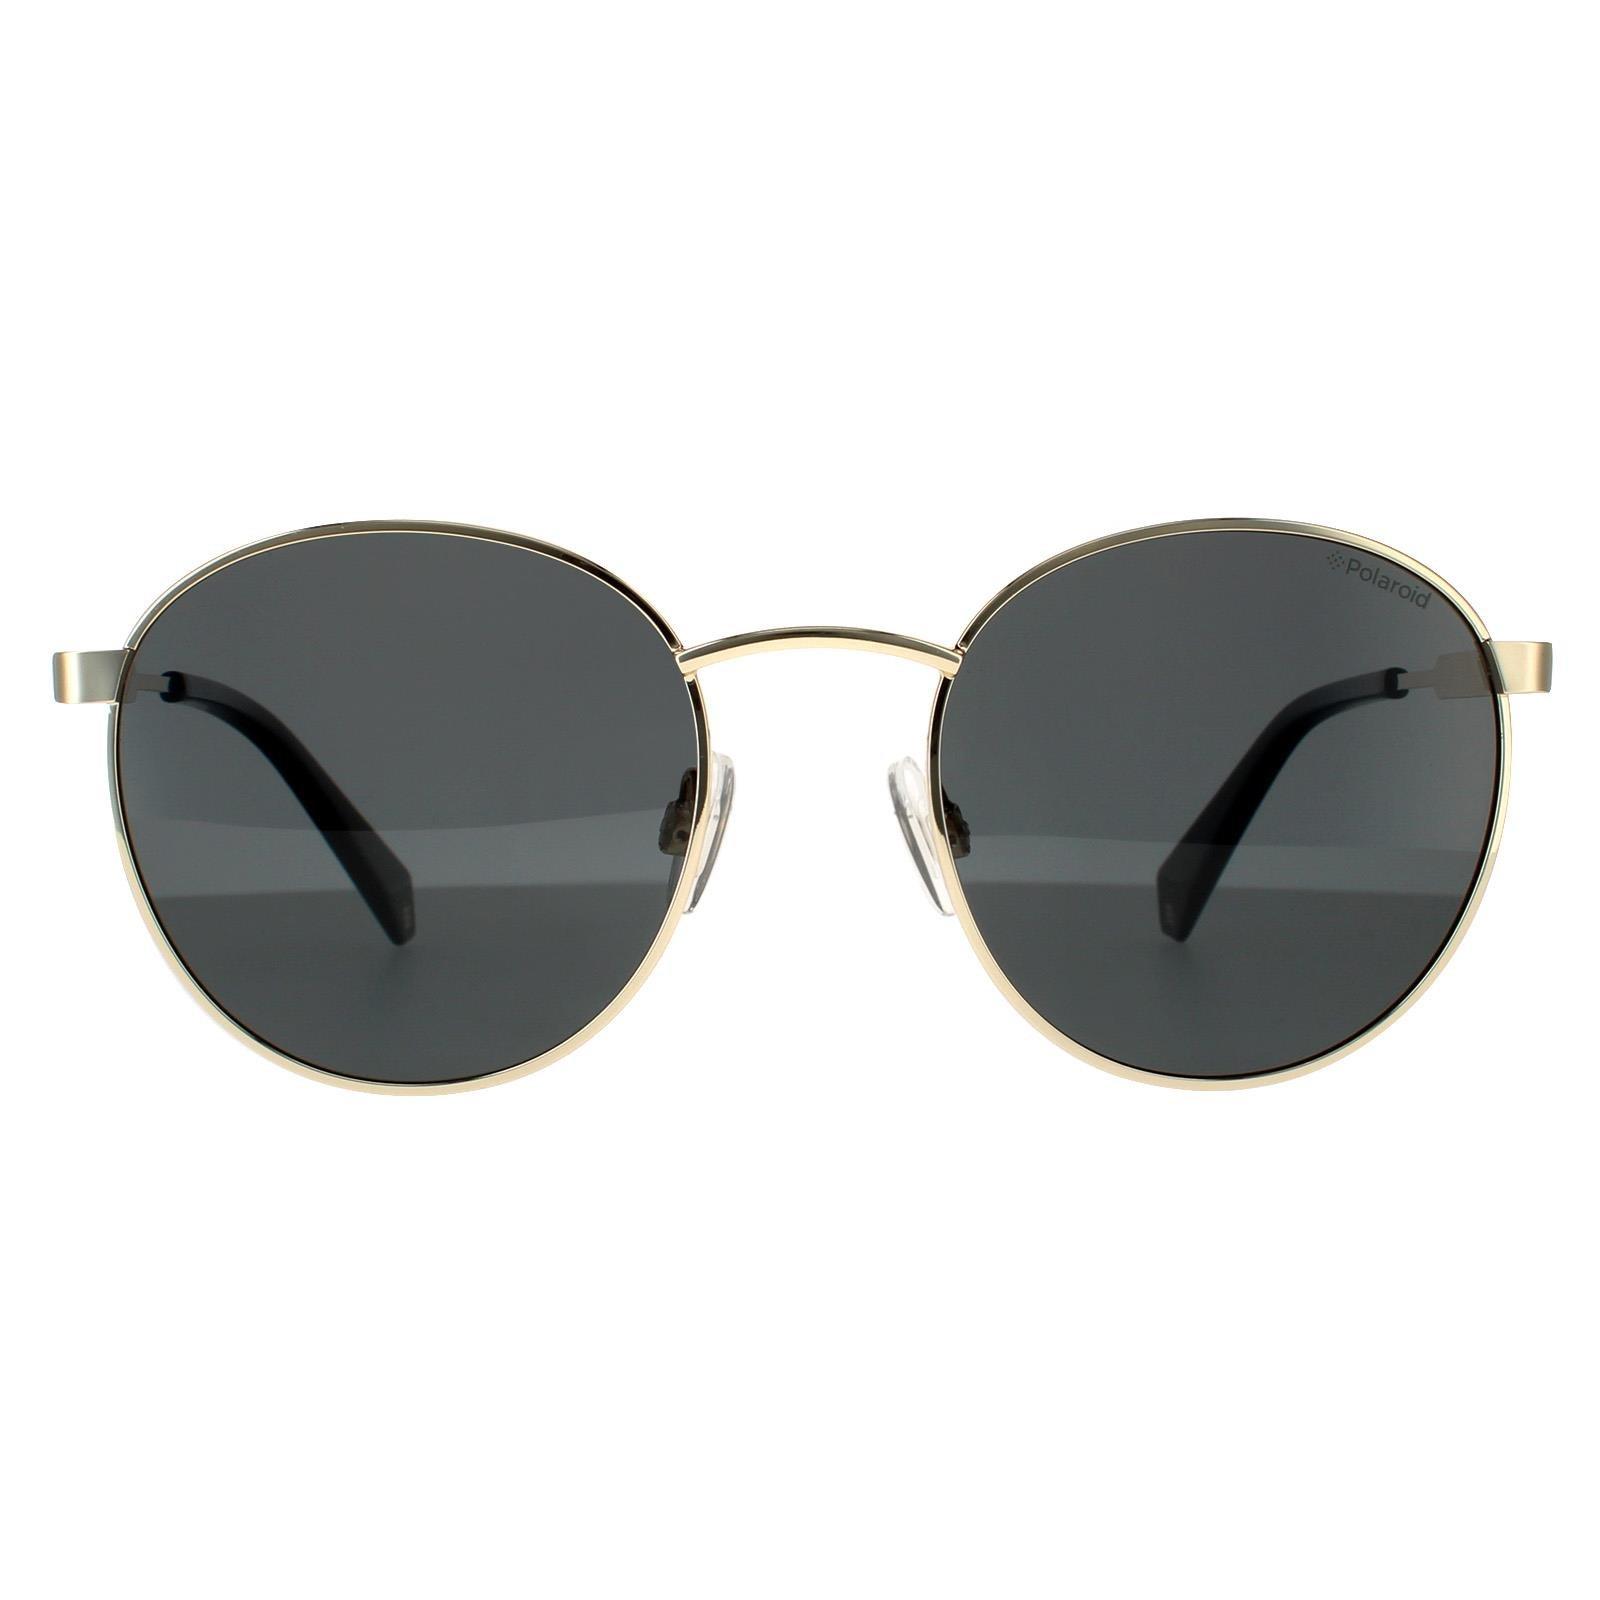 Круглые золотисто-серые серые поляризованные солнцезащитные очки Polaroid, золото polaroid pld 6174 s mu1 m9